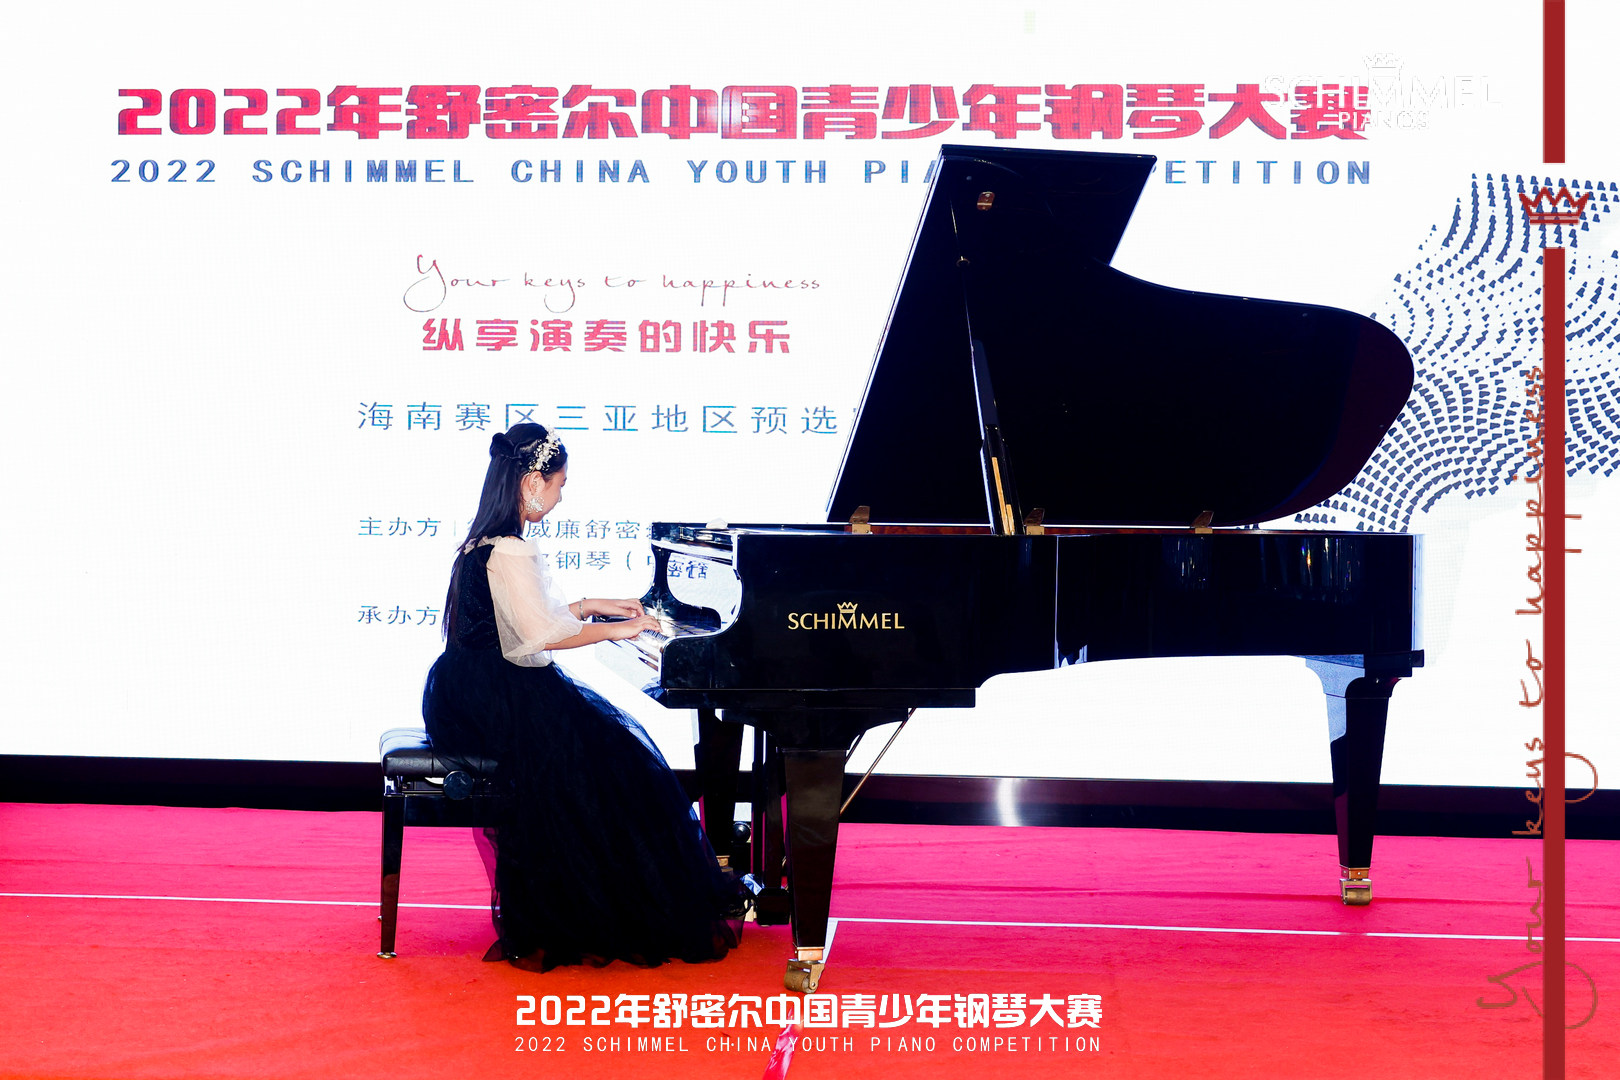 舒密尔钢琴赛事资讯 | 海南三亚预选赛精彩回顾